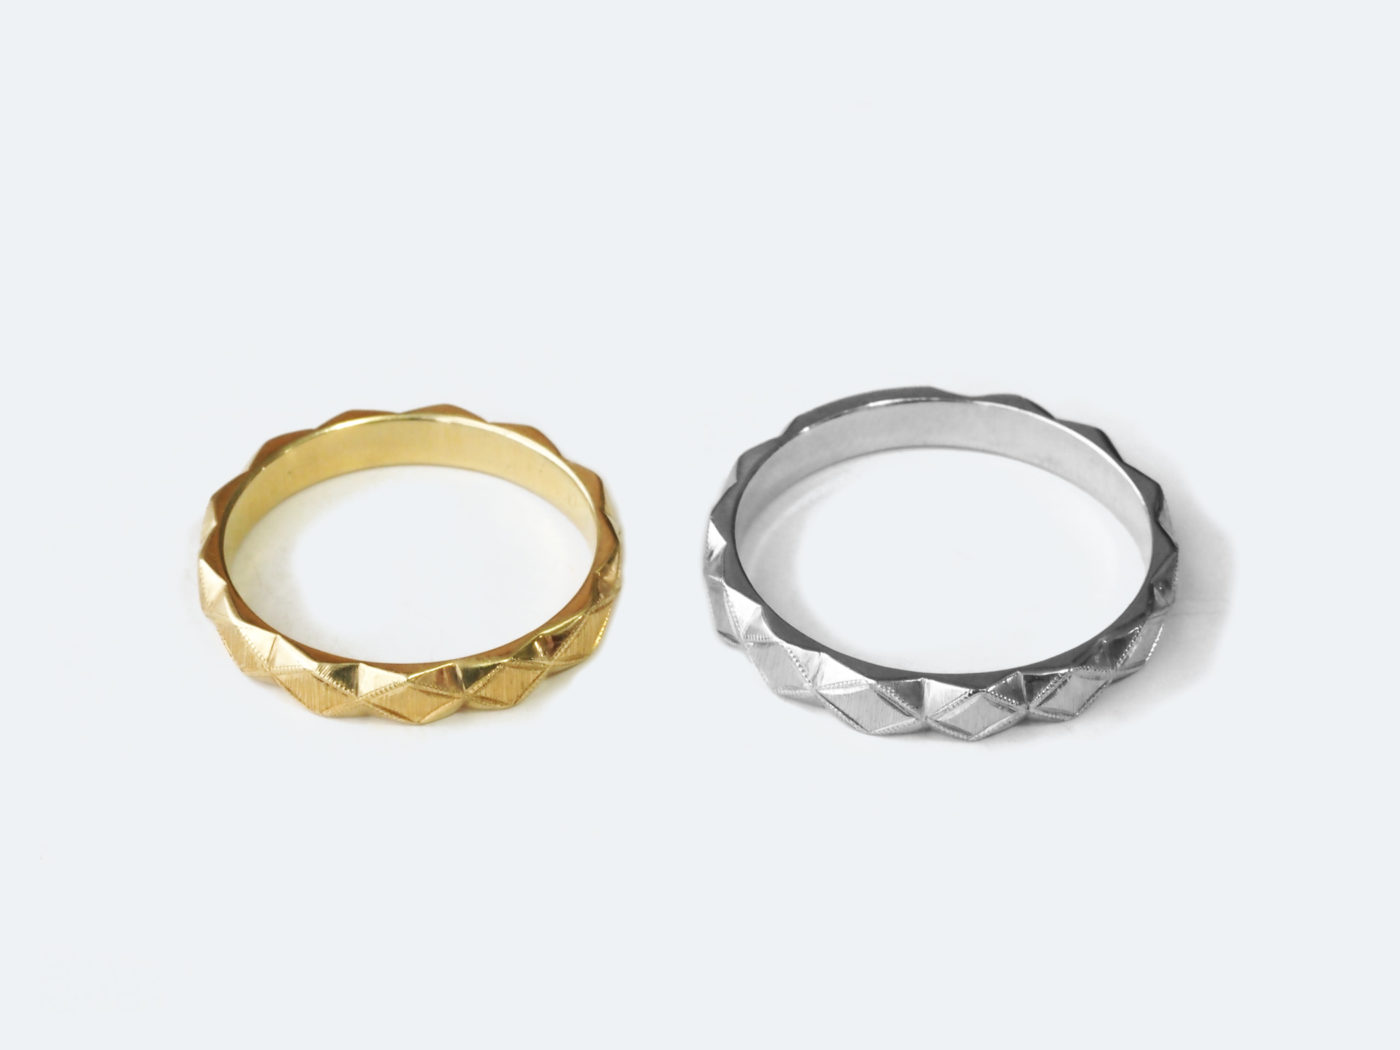 【イタリア フィレンツェ彫り マリッジリング】Marriage ring-001 | treSensi | ジュエリー作家によるイタリア